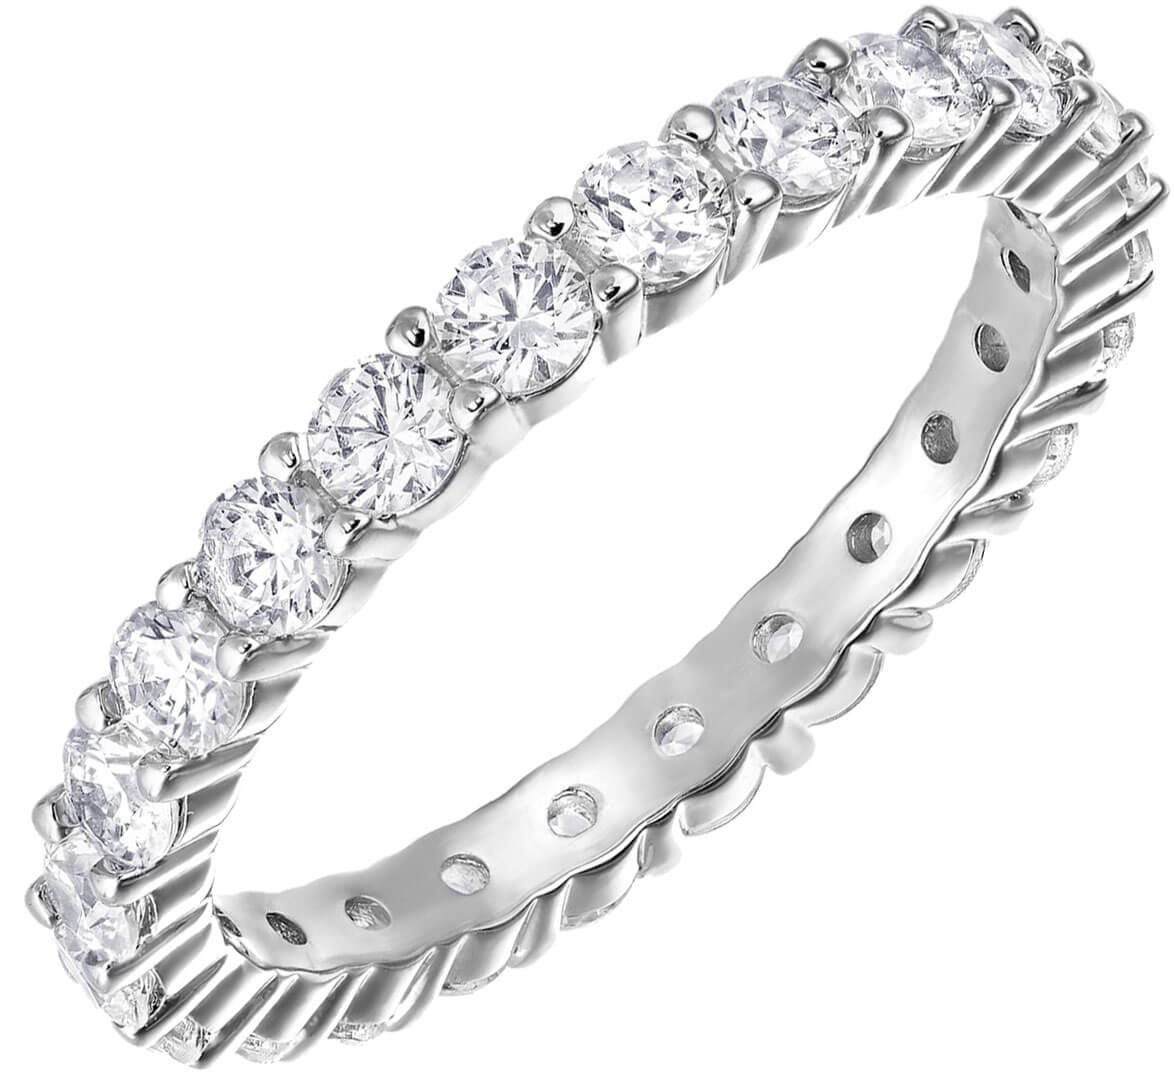 Swarovski Luxusní prsten s krystaly Swarovski 5257479 52 mm